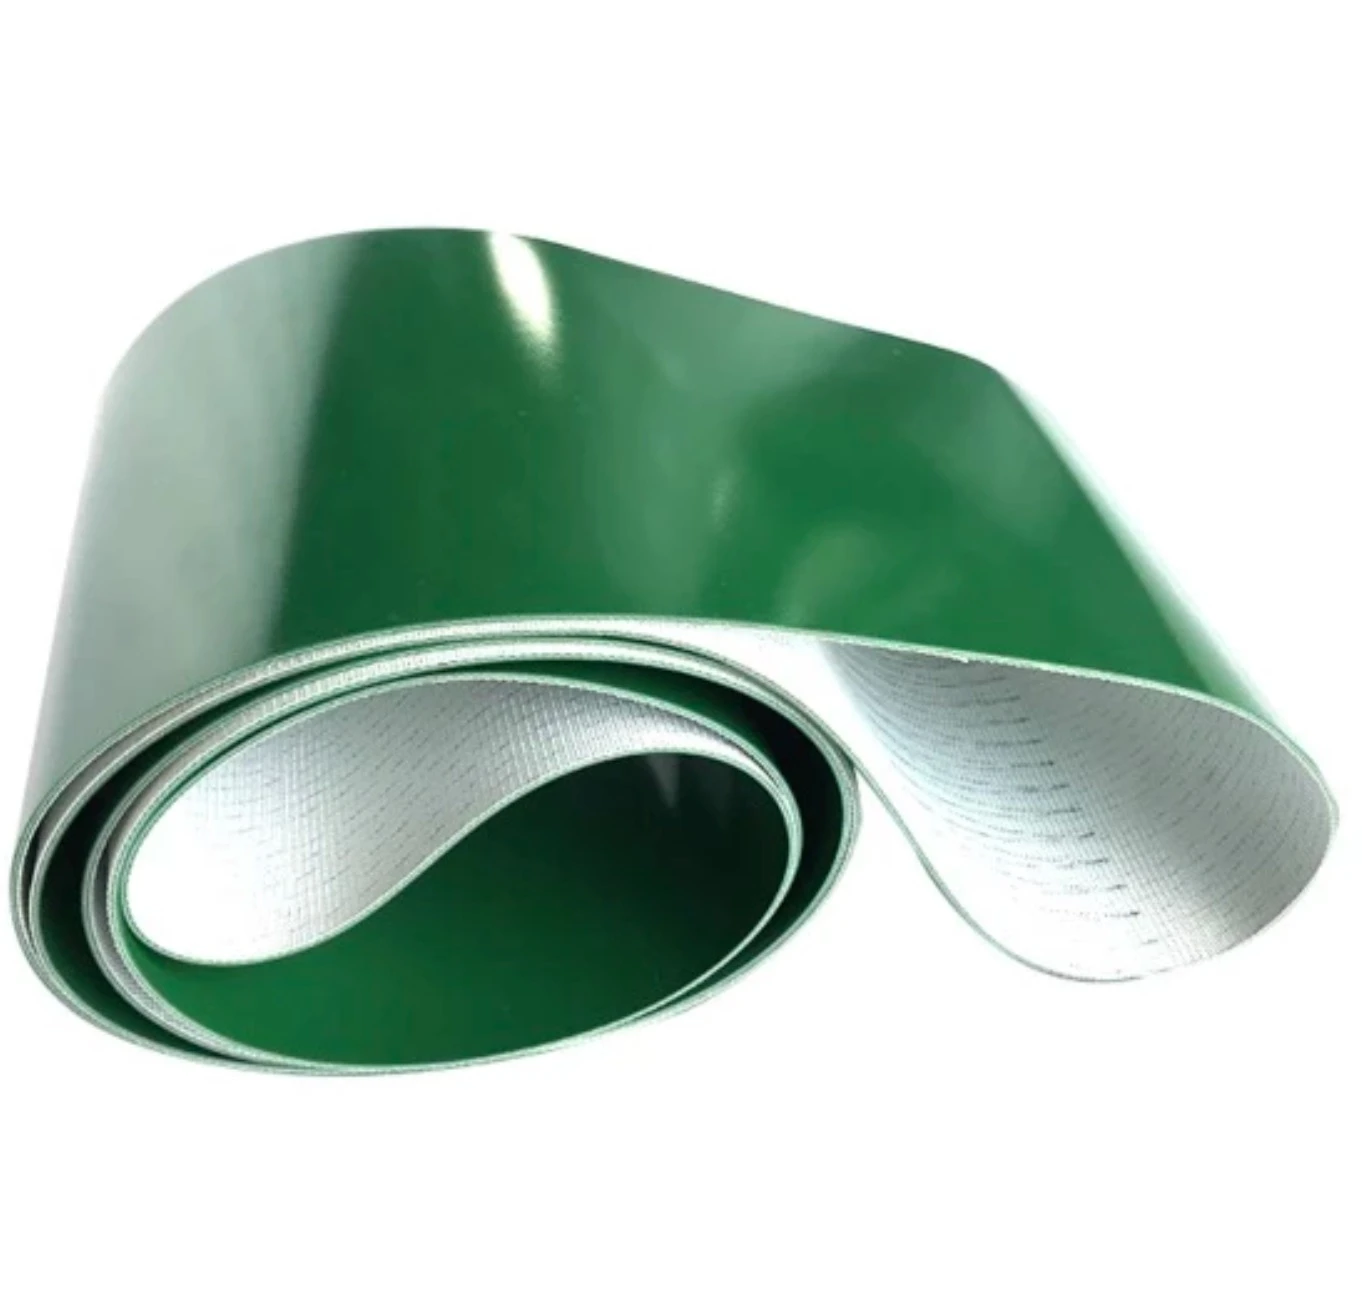 Nylon Fabric Green Conveyor Belt EMSIKC Transmission Belt Industrial Belt 2mm 